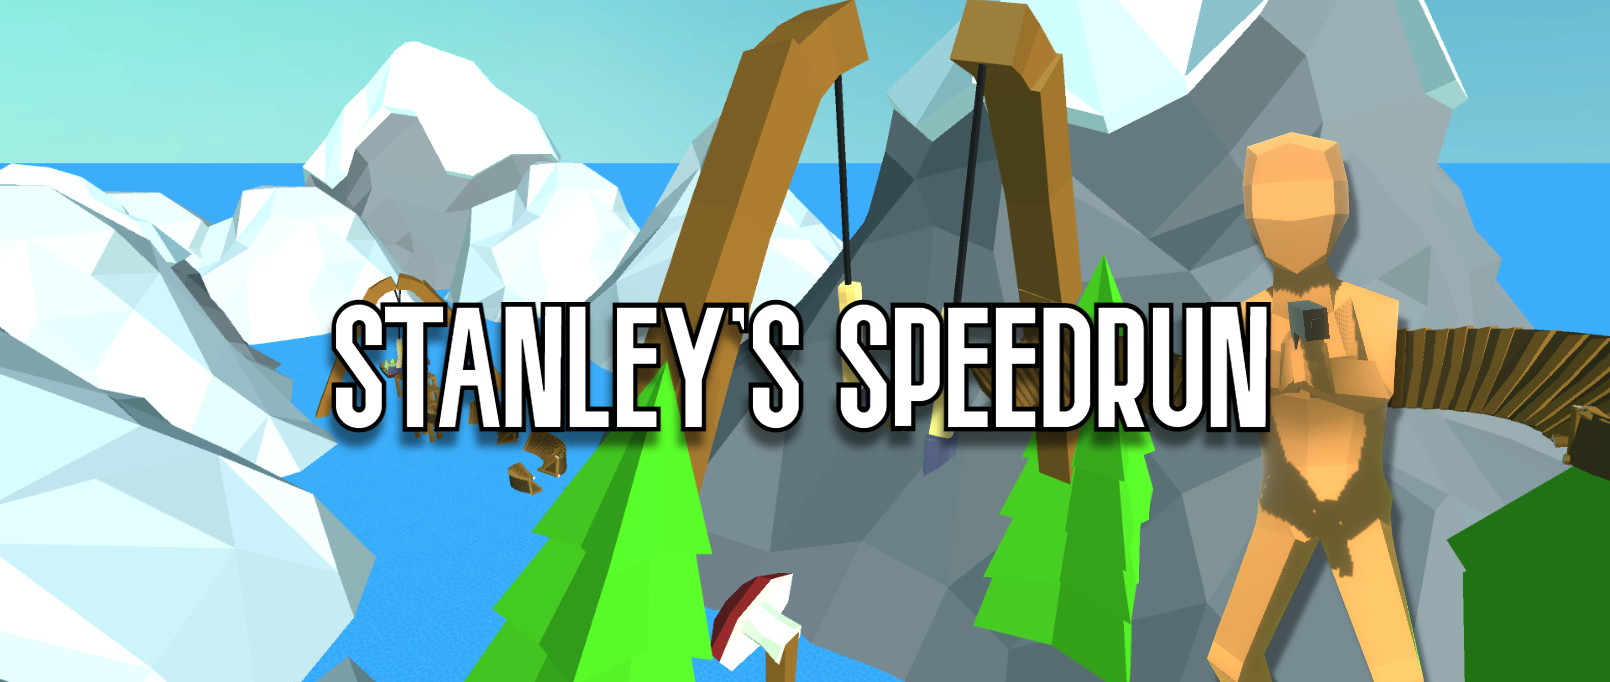 Stanley's Speedrun